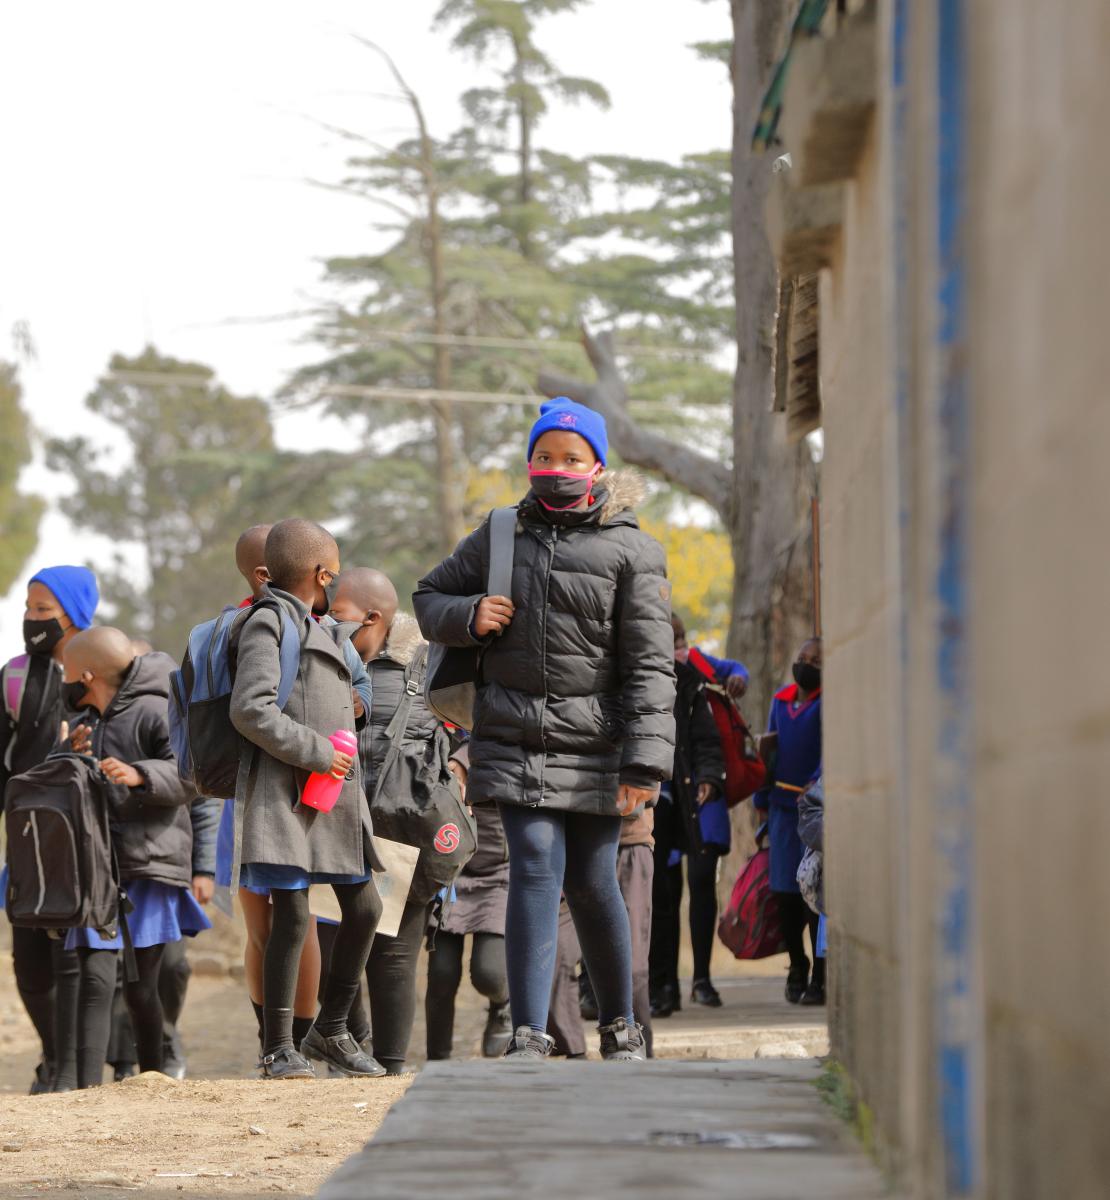 مجموعة من الأطفال في سن المدرسة يرتدون كمامات أثناء خروجهم من المدرسة.